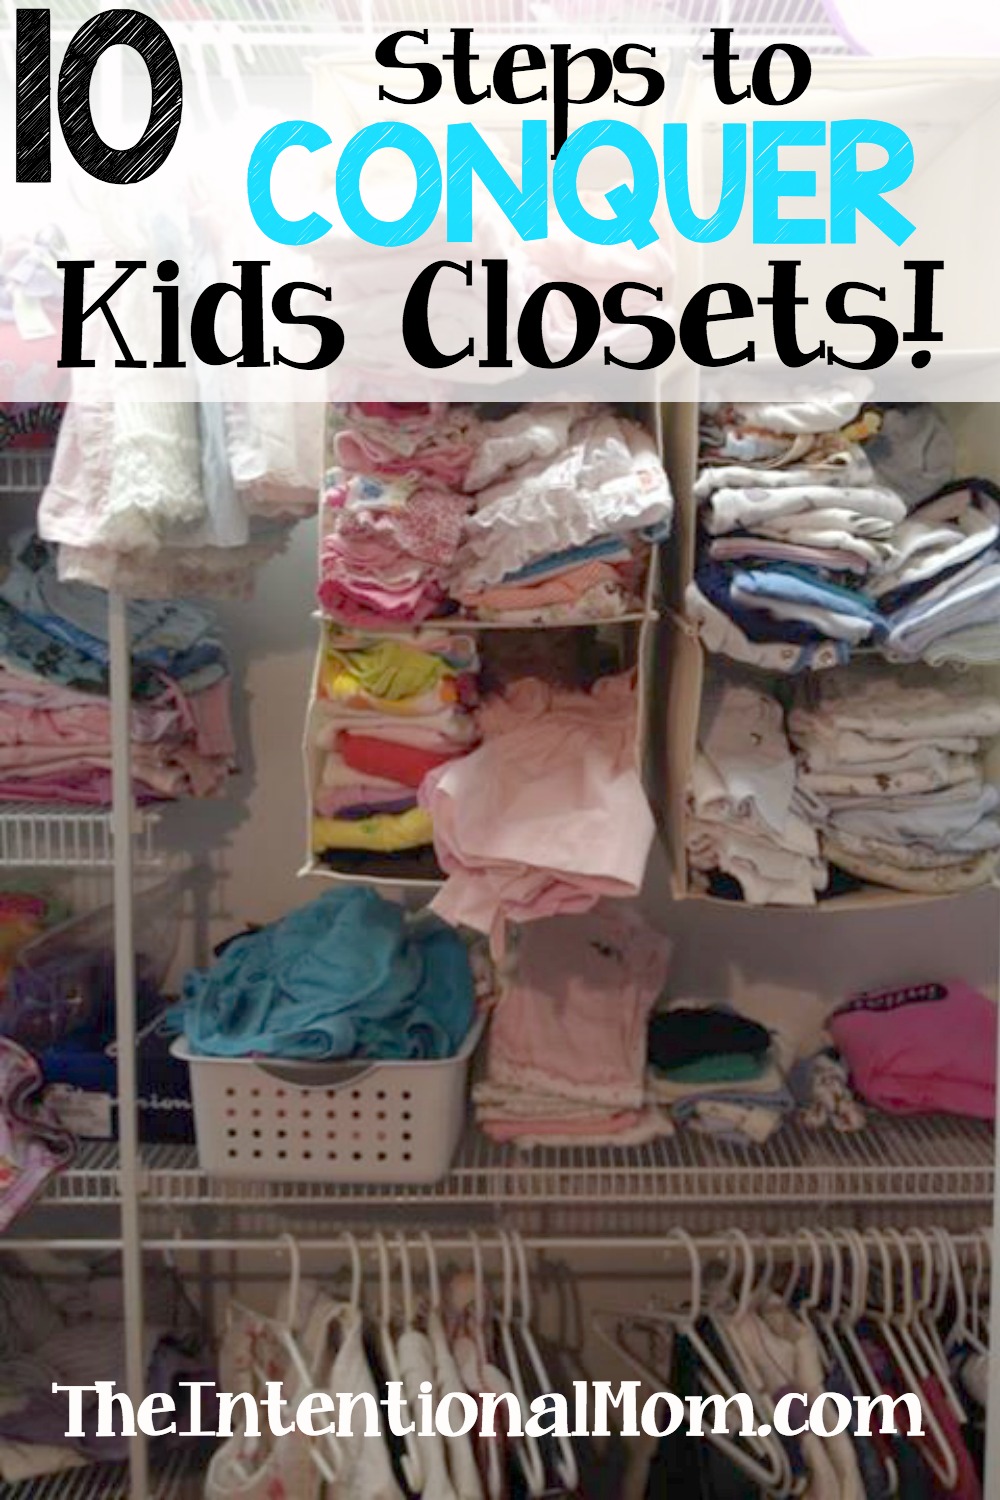 10 Steps to Conquer Kids Closets!